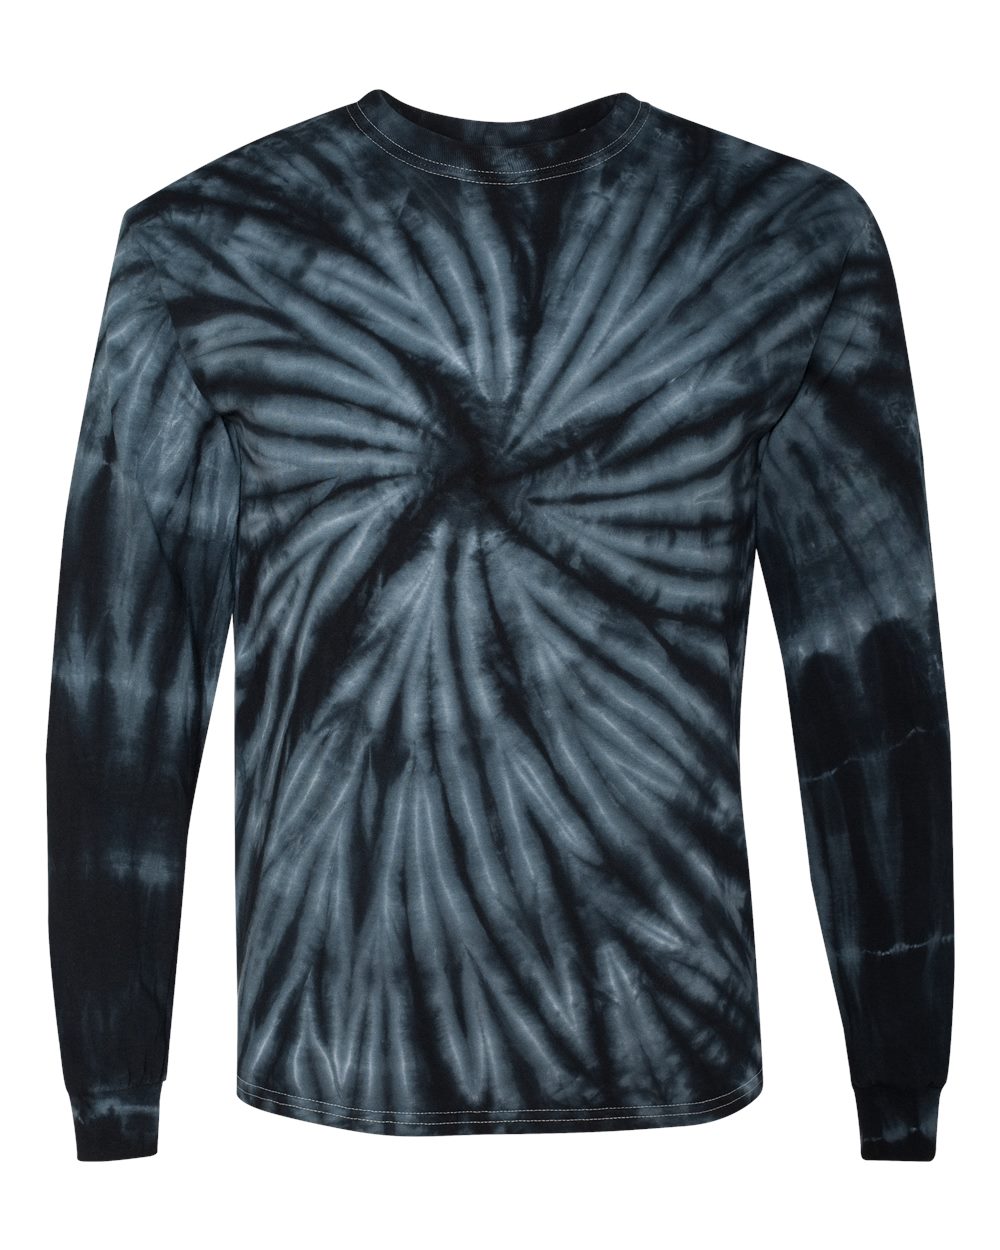 Dyenomite - Cyclone Pinwheel Tie-Dyed Long Sleeve T-Shirt